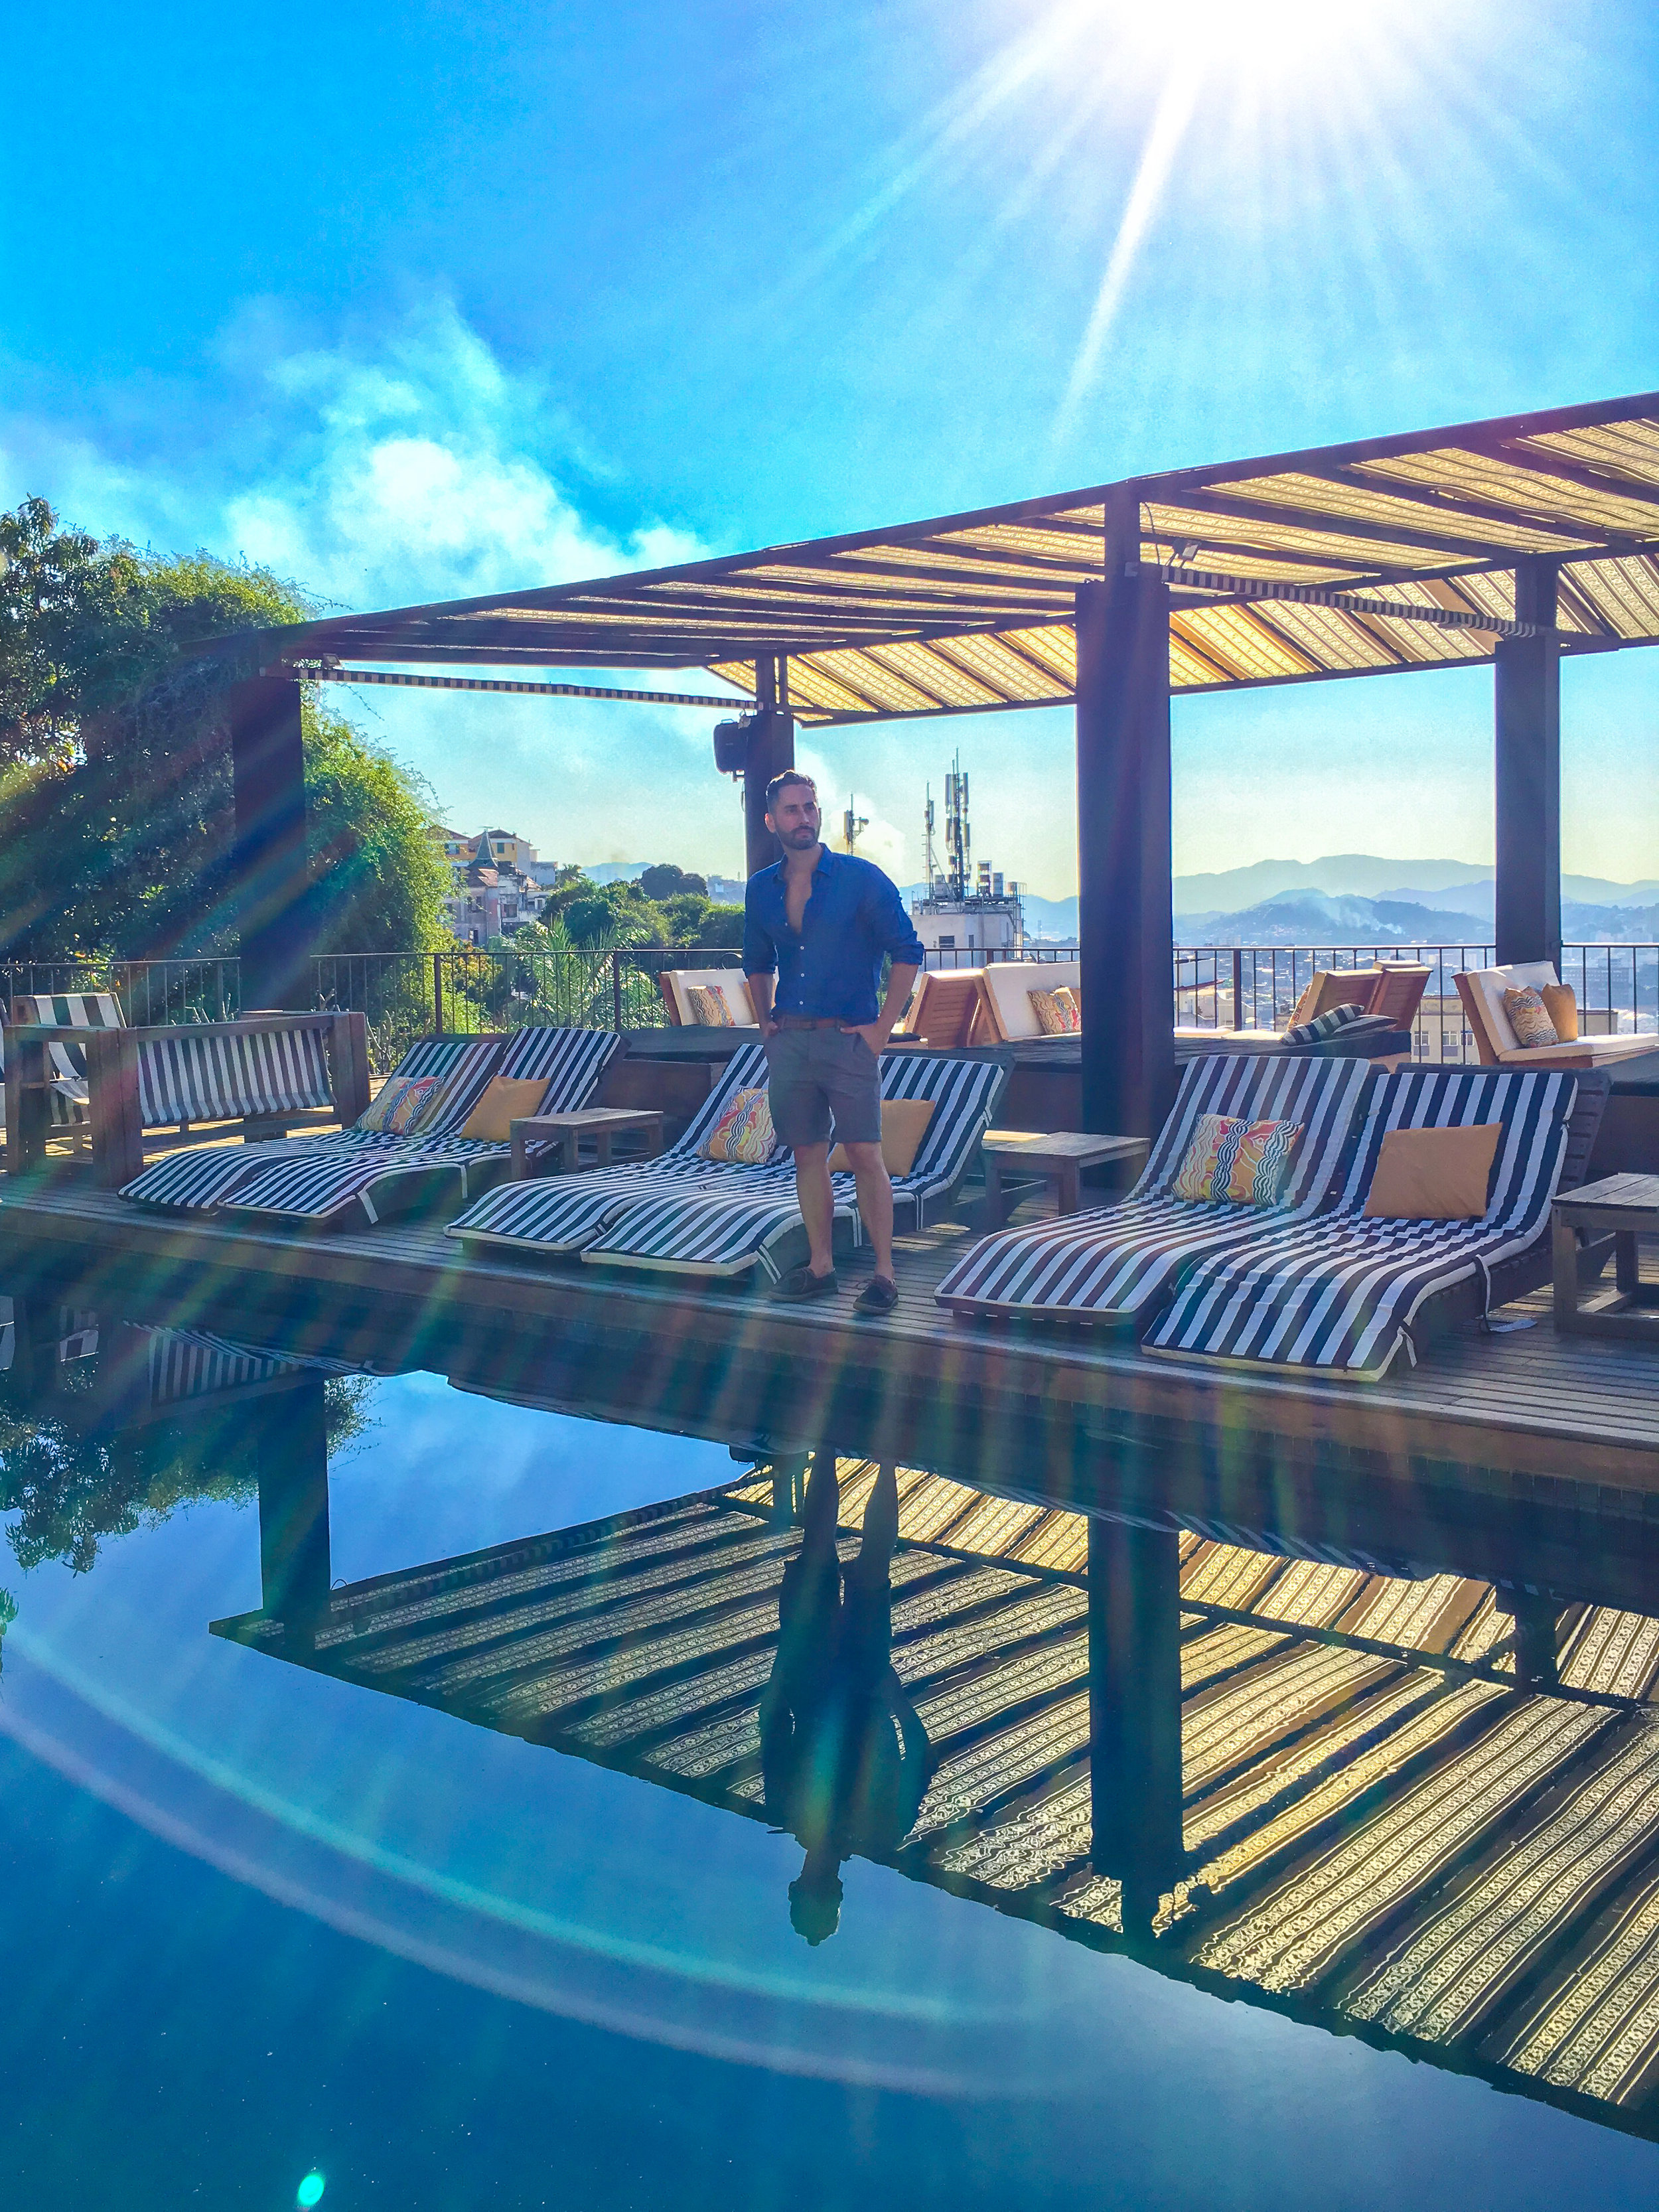  A piscina do hotel rodeada de árvores é o lugar ideal para relaxar e beber um bom drink. A vista do deck da piscina é deslumbrante.  